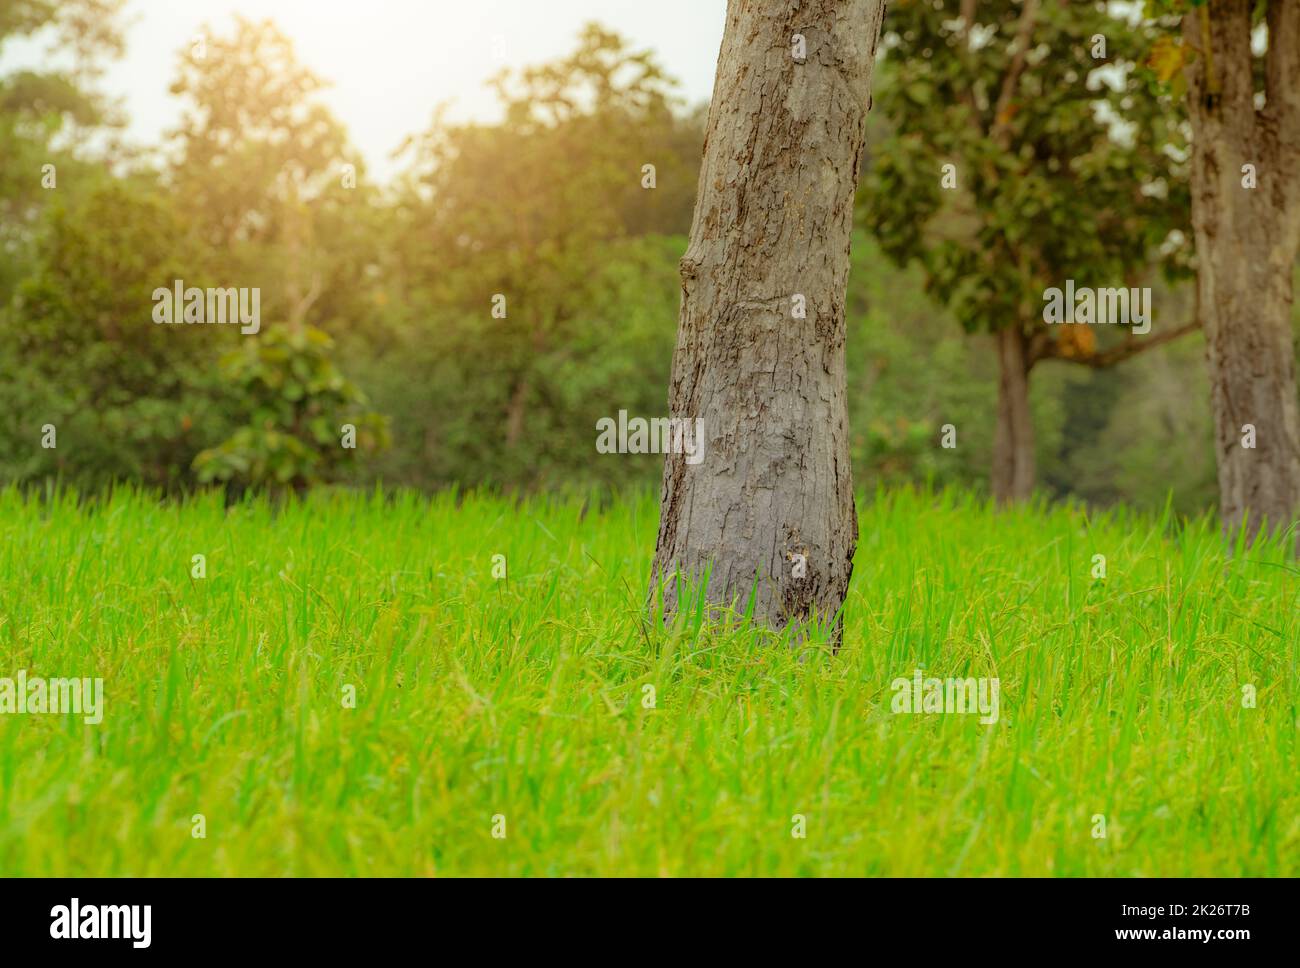 Ein Baum auf einem Reisfeld in Ubon Ratchathani, Thailand. Reisplantation. Grünes Reisfeld. Bio-Reisfarm in Asien. Waldnaher landwirtschaftlicher Betrieb im ländlichen Raum. Nachhaltige Landwirtschaft. Stockfoto